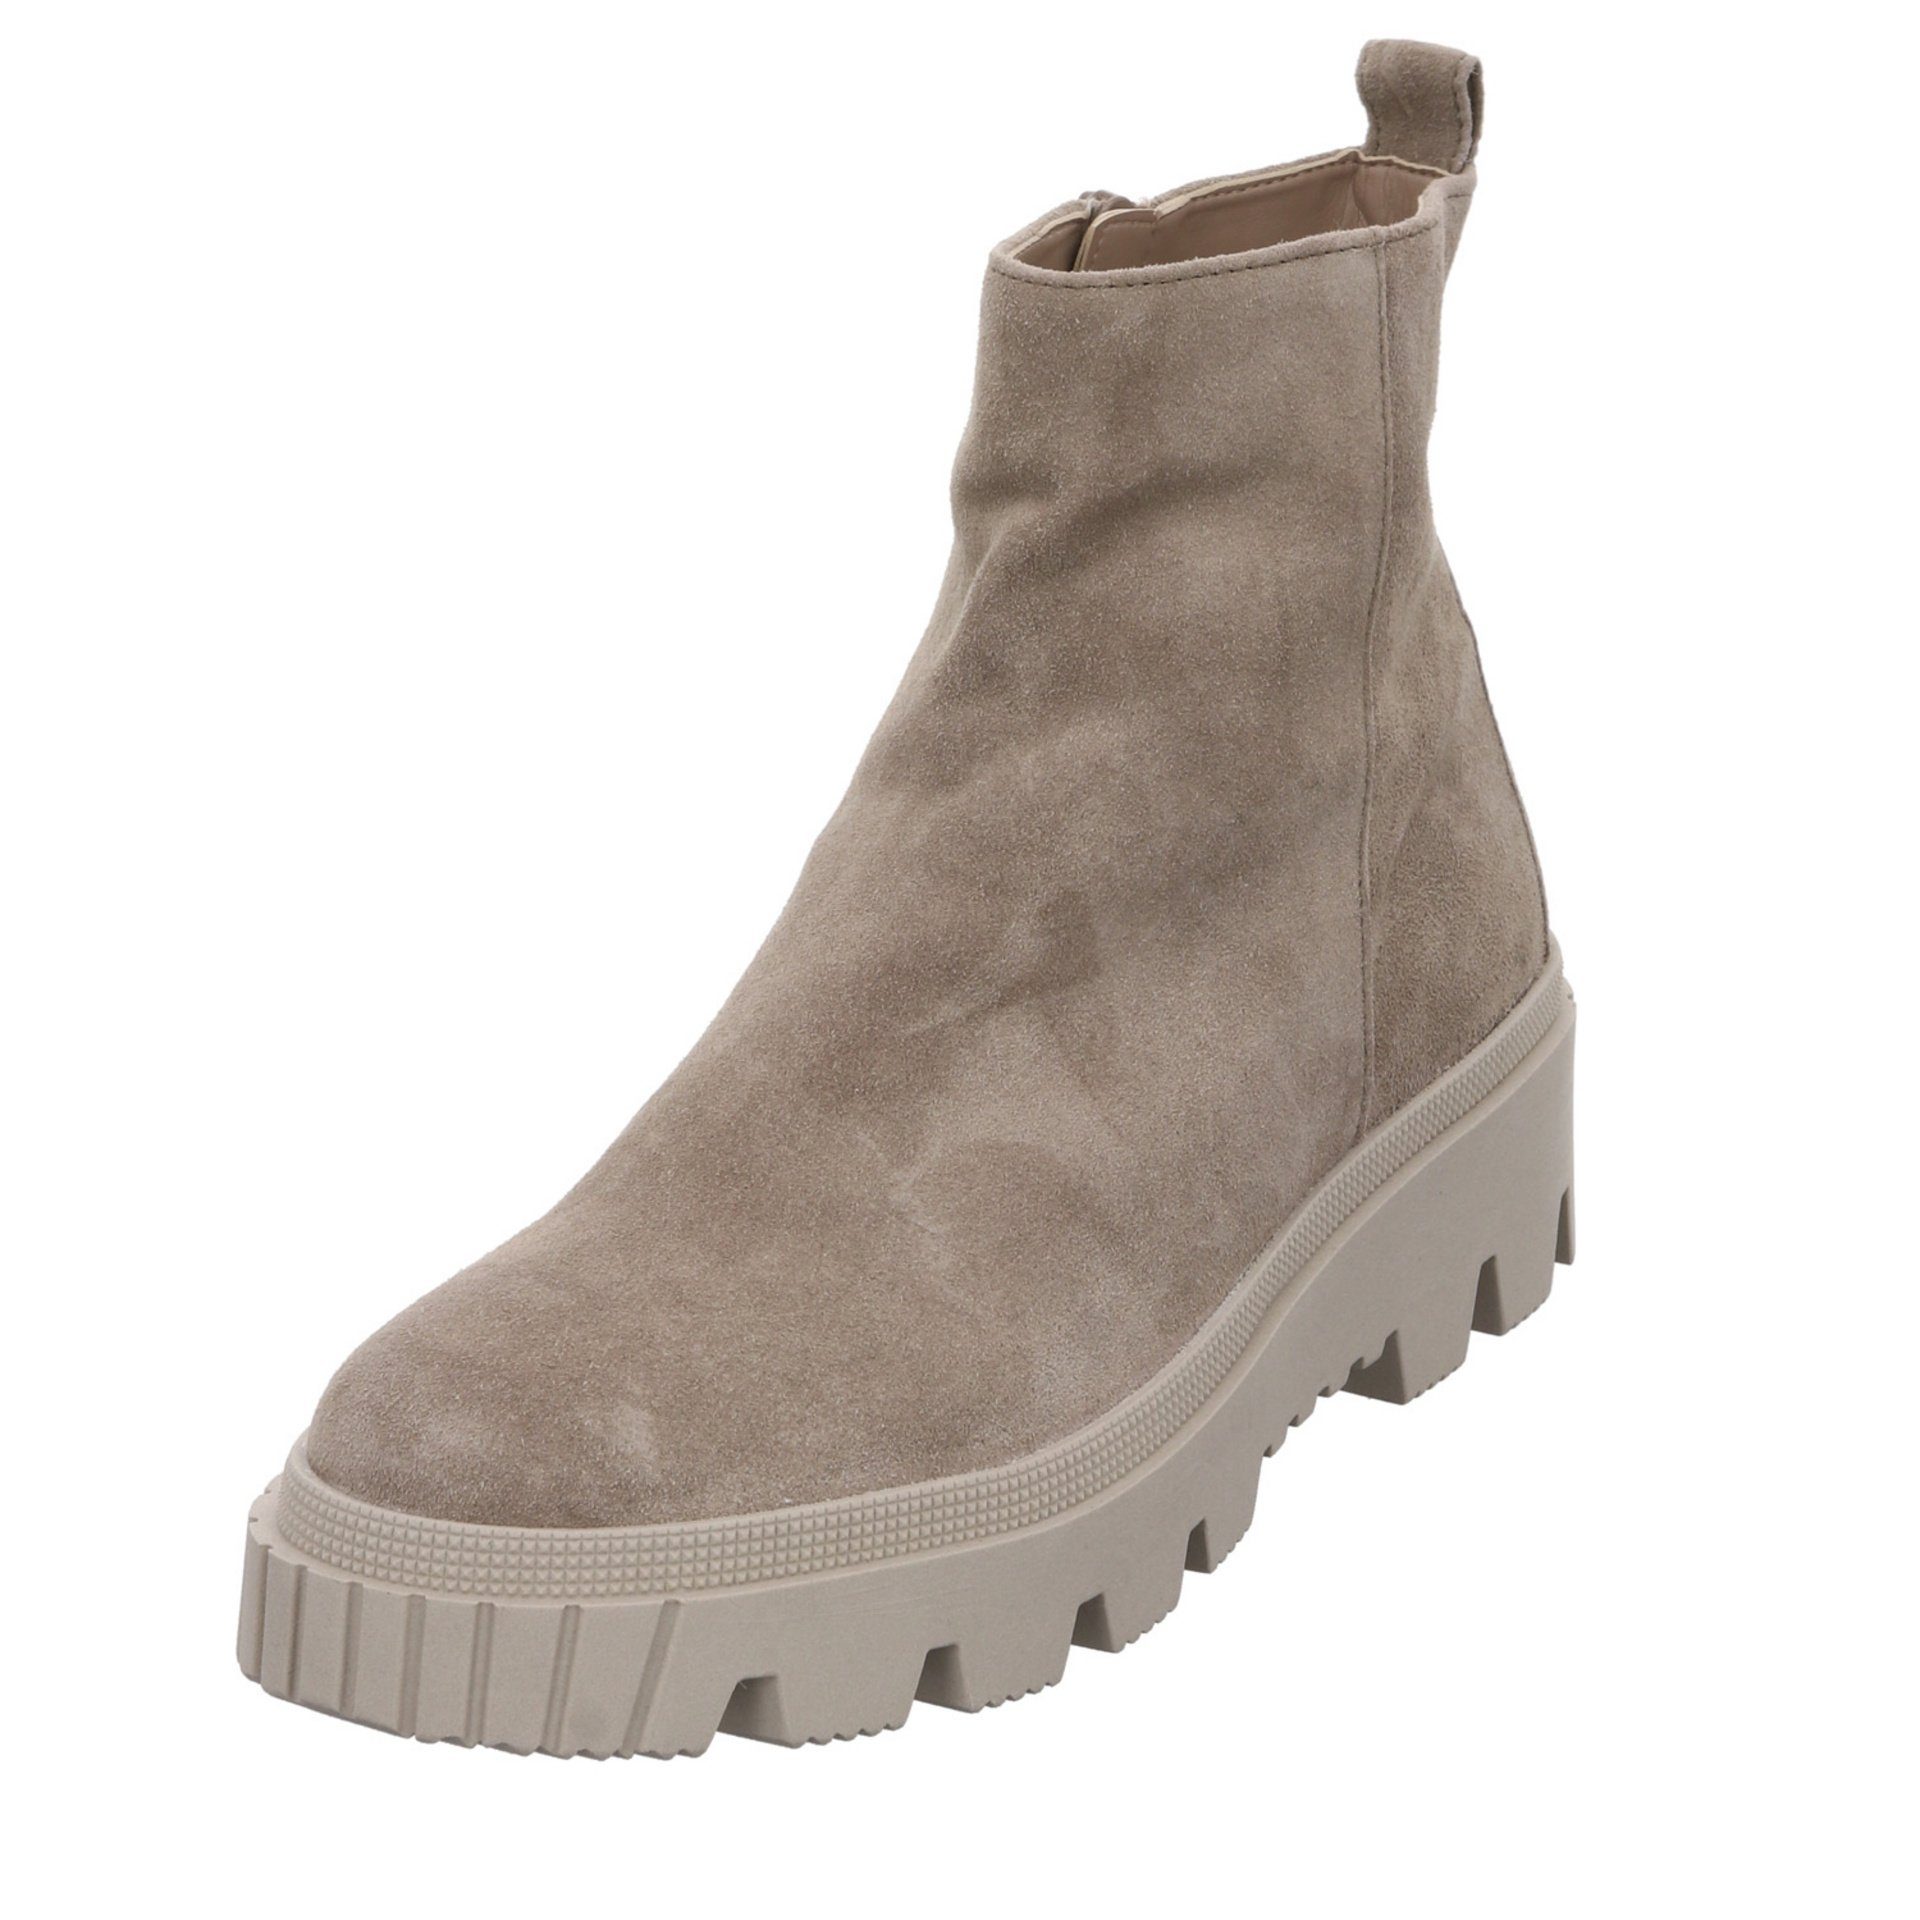 Gabor Damen Stiefeletten Schuhe Boots Elegant Freizeit Stiefelette Veloursleder salbei (dust) (07301882)